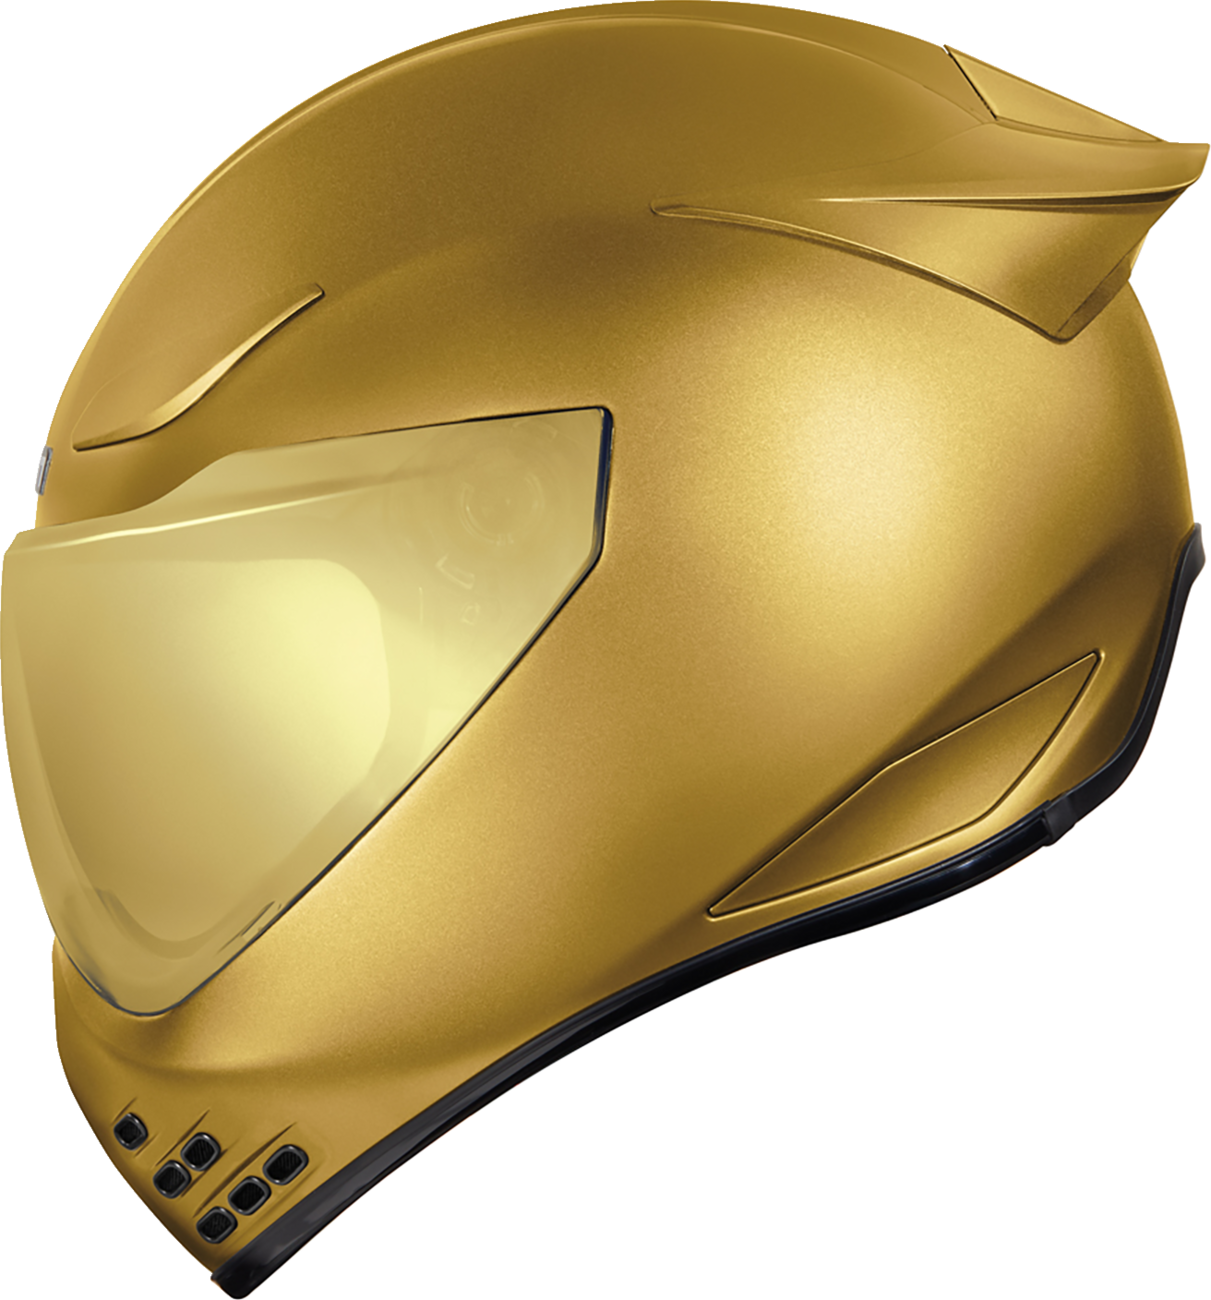 ICON Domain™ Helmet - Cornelius - Gold - 3XL 0101-14971